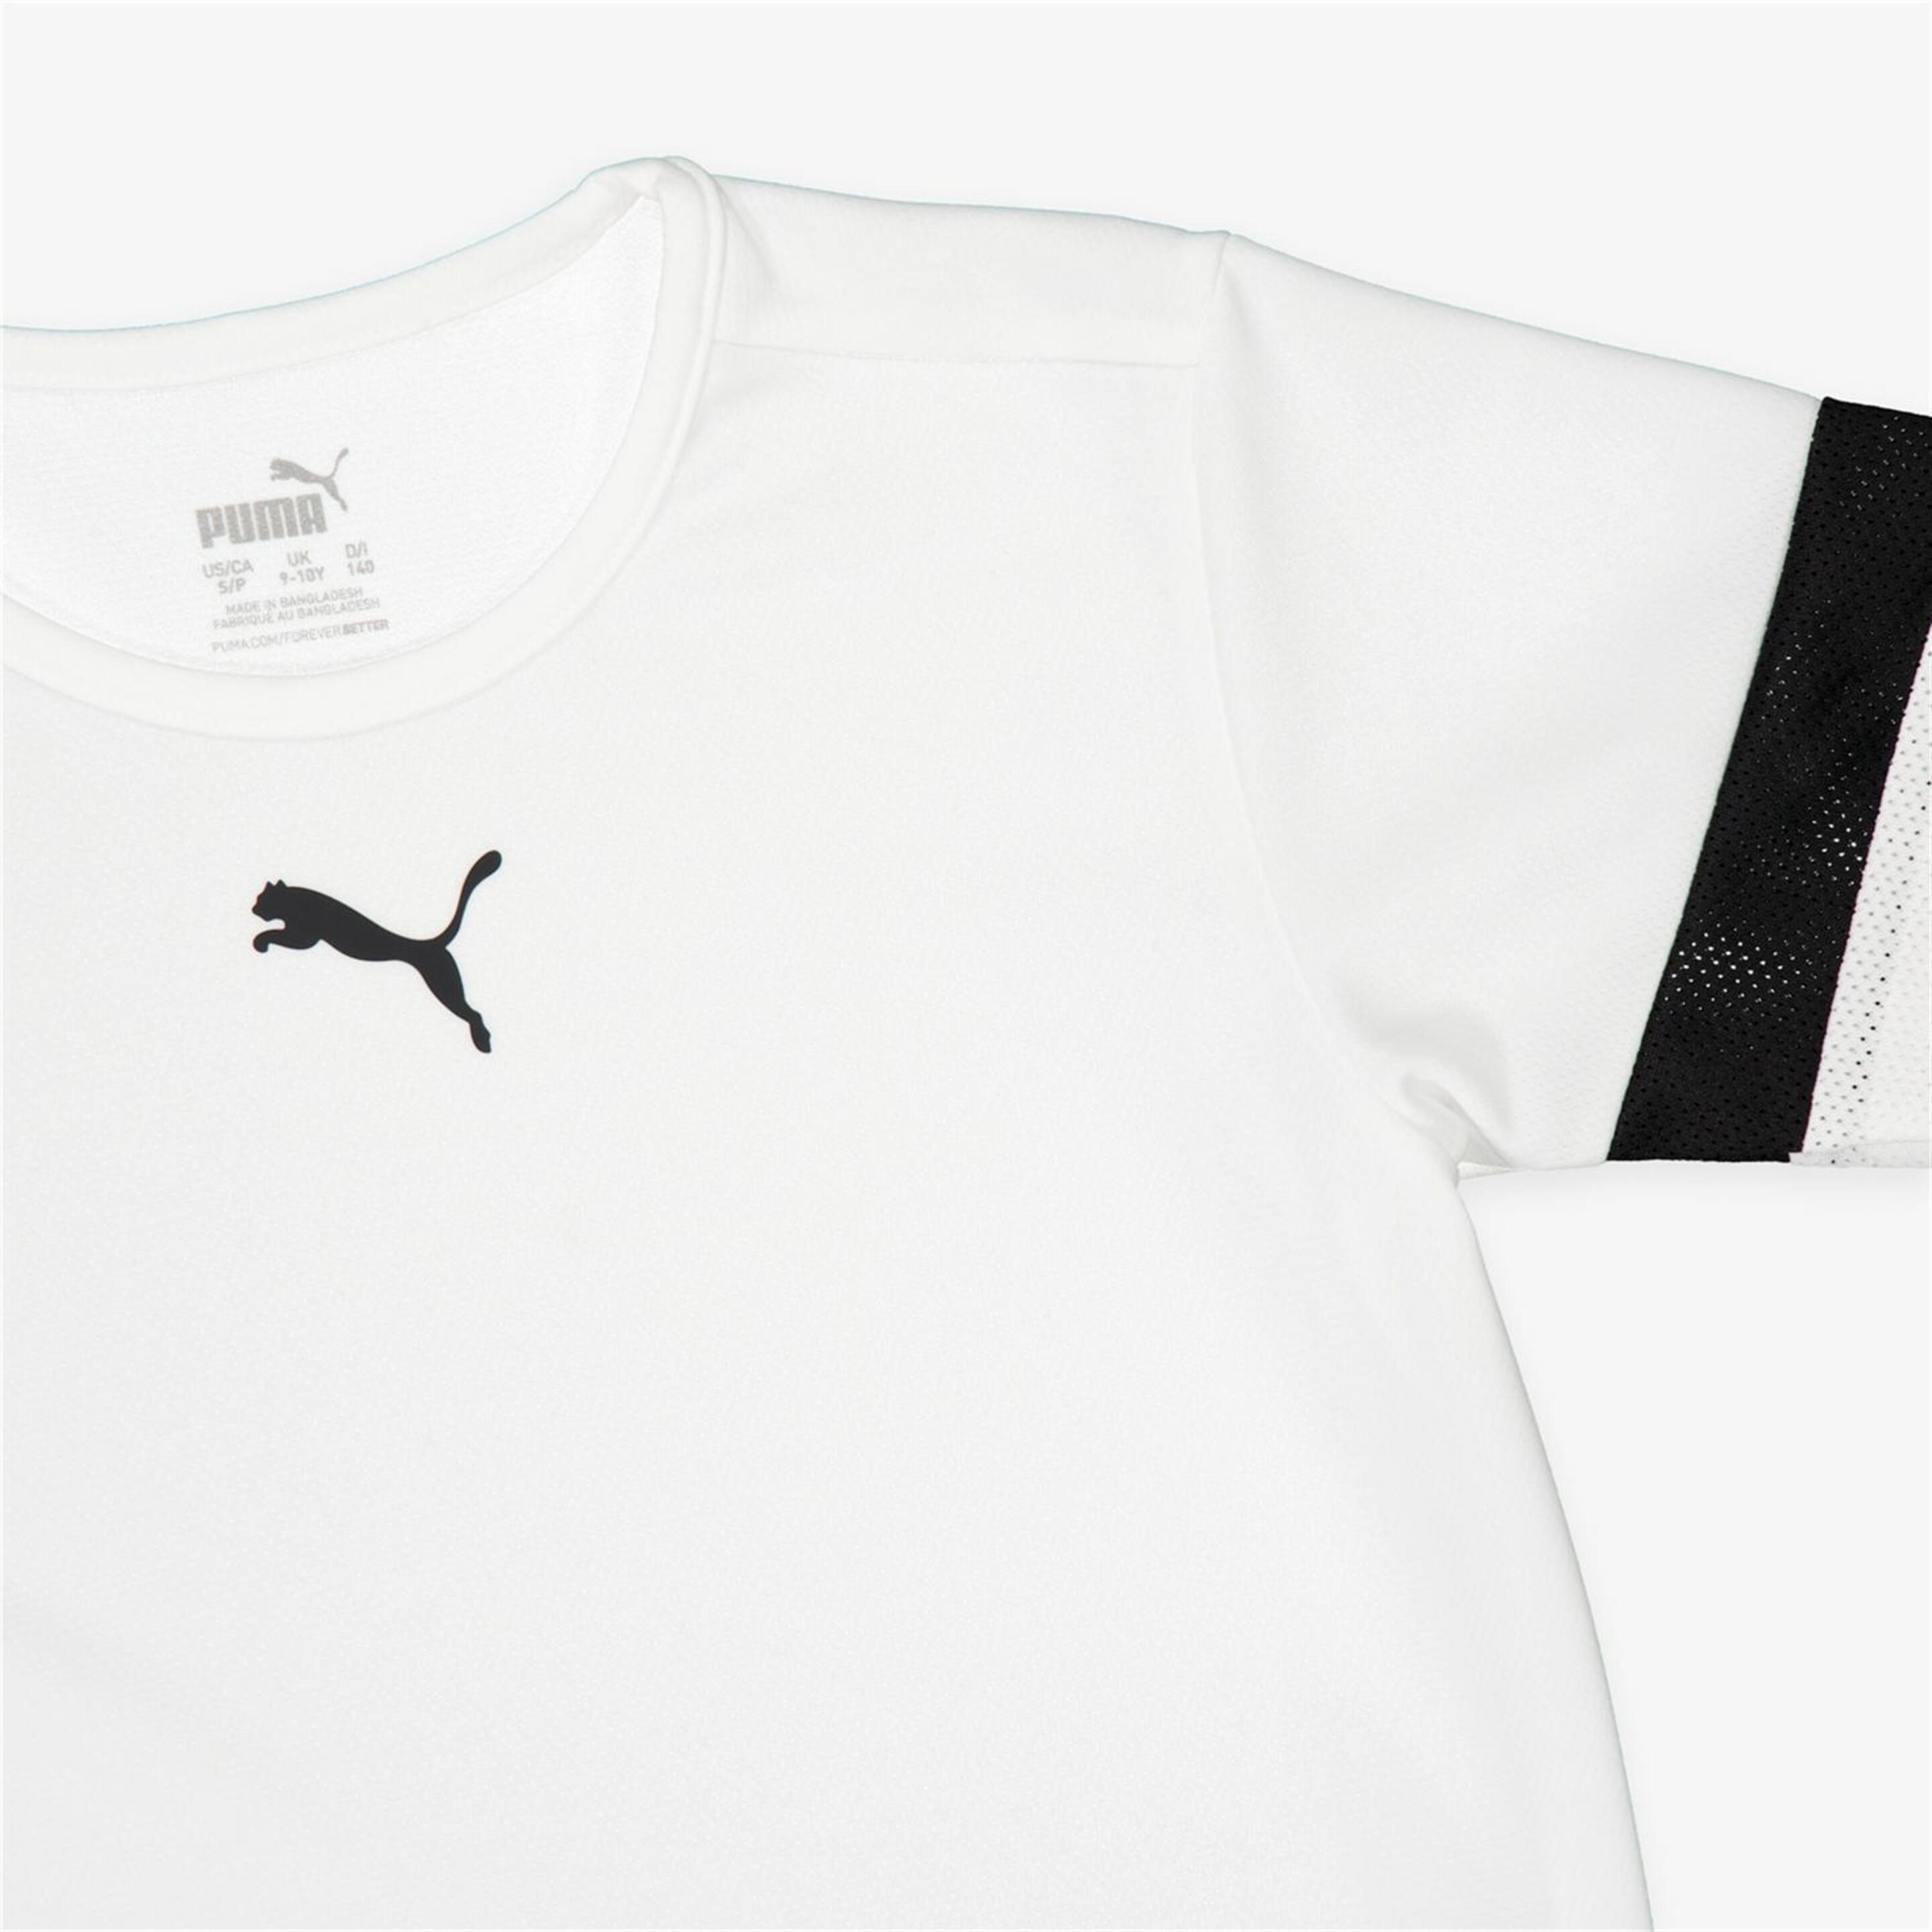 Puma Teamrise - Blanco - Camiseta Fútbol Junior